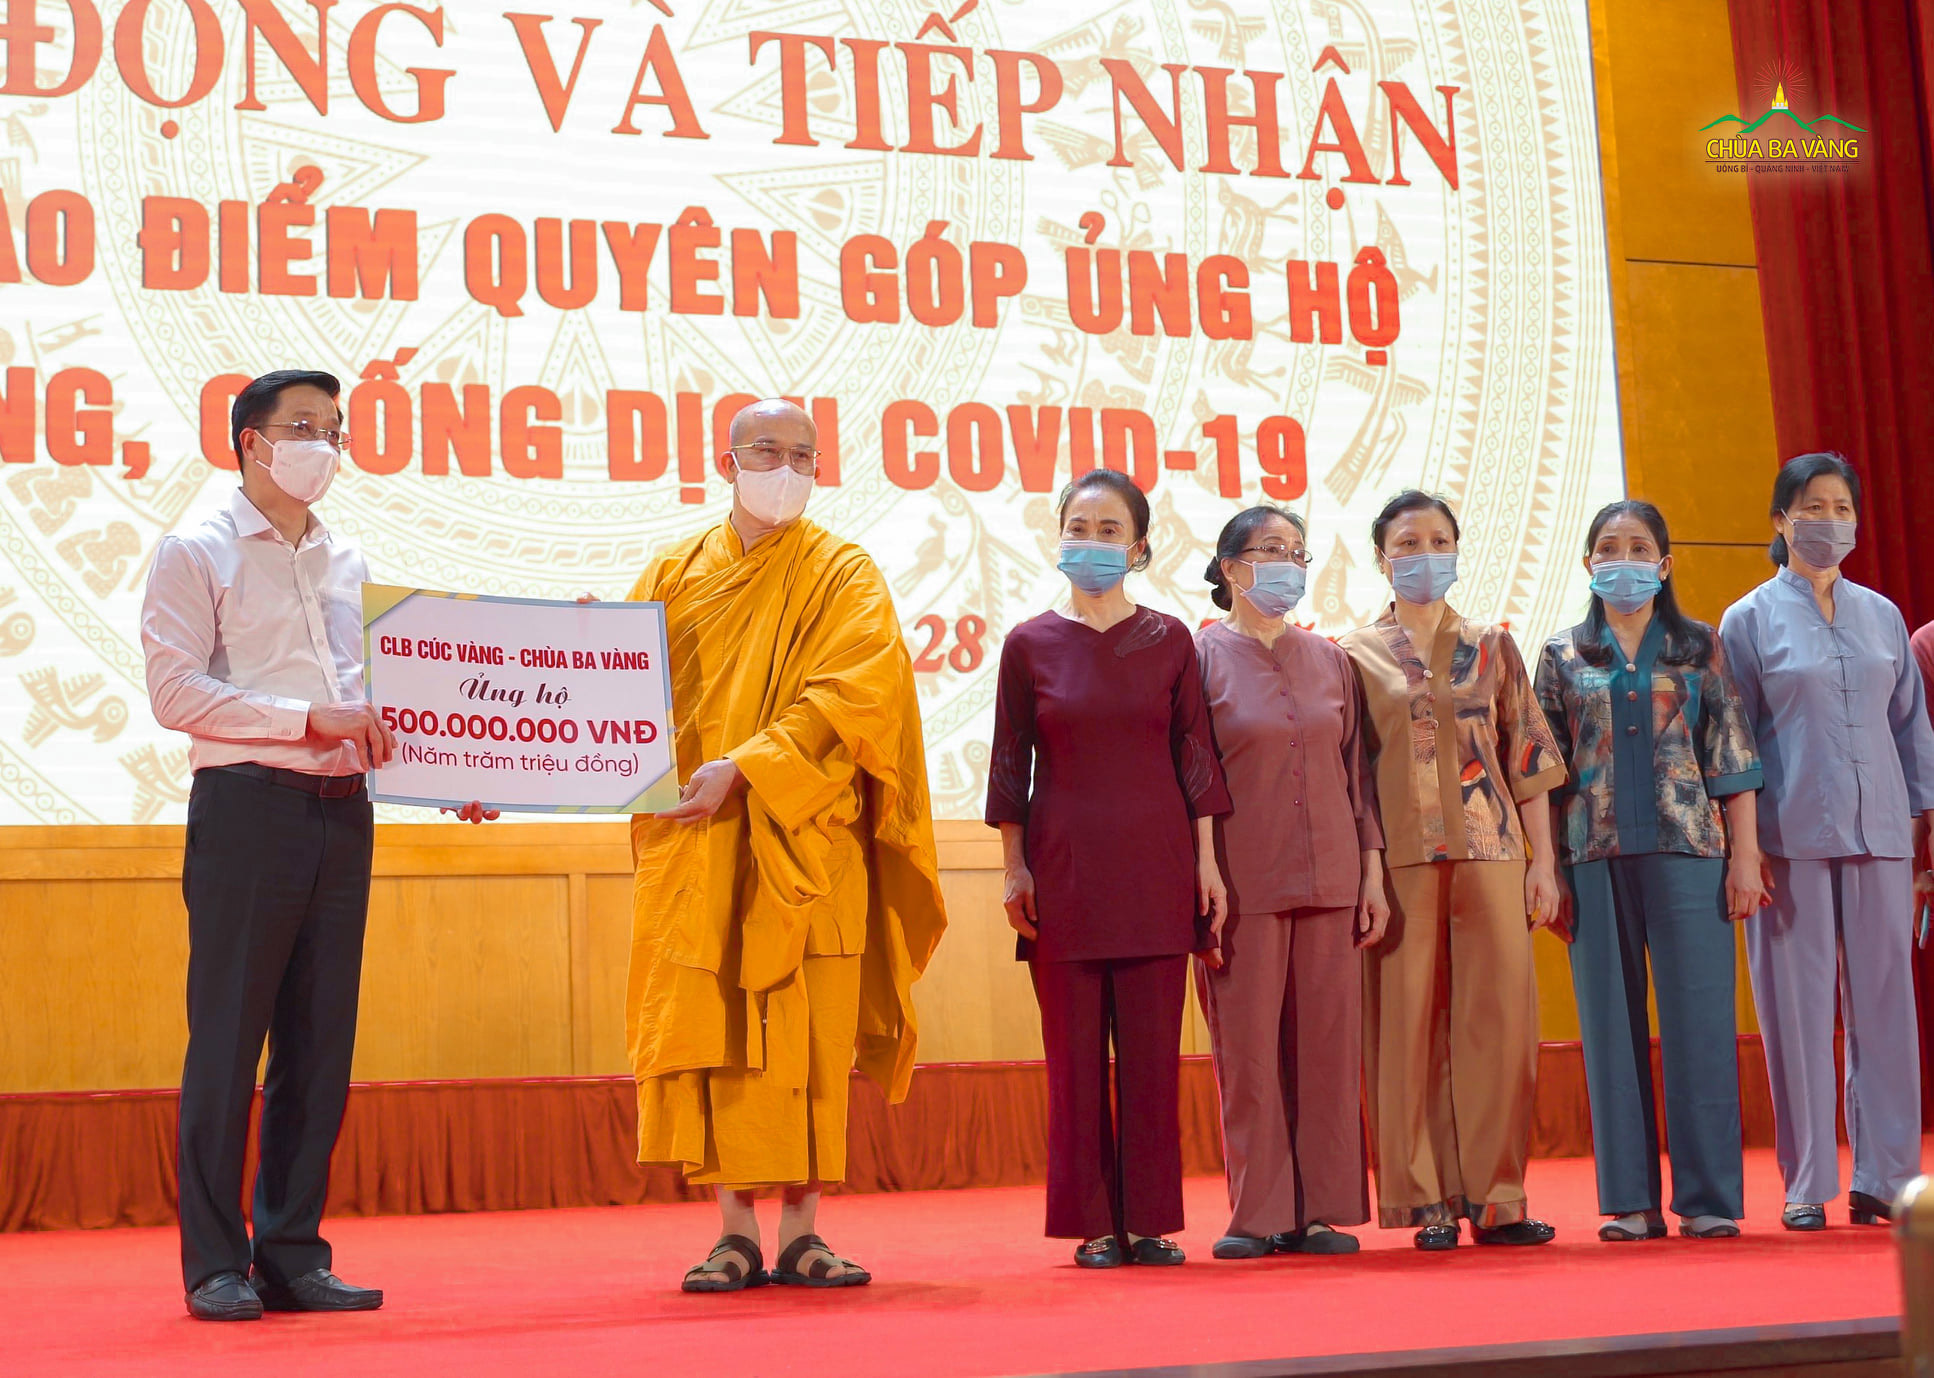 Sư Phụ Thích Trúc Thái Minh cùng các Phật tử trong CLB Cúc Vàng chùa Ba Vàng ủng hộ trong công tác phòng chống dịch bệnh COVID -19  